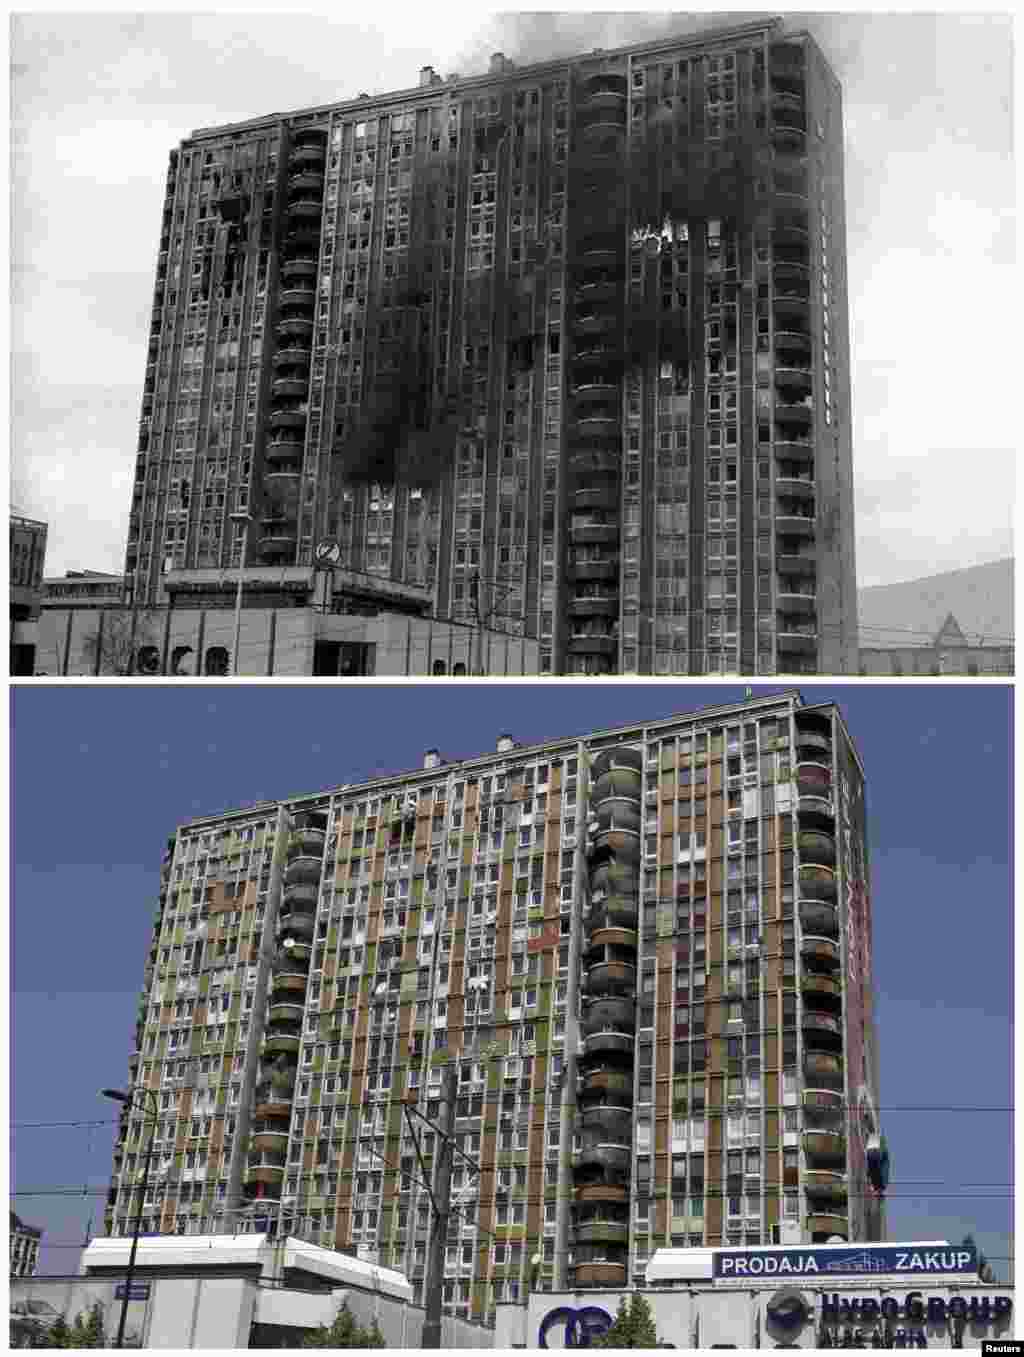 Горящее здание после обстрела в районе Пофаличи в Сараево, апрель 1992. То же здание, 30 мая 2011.